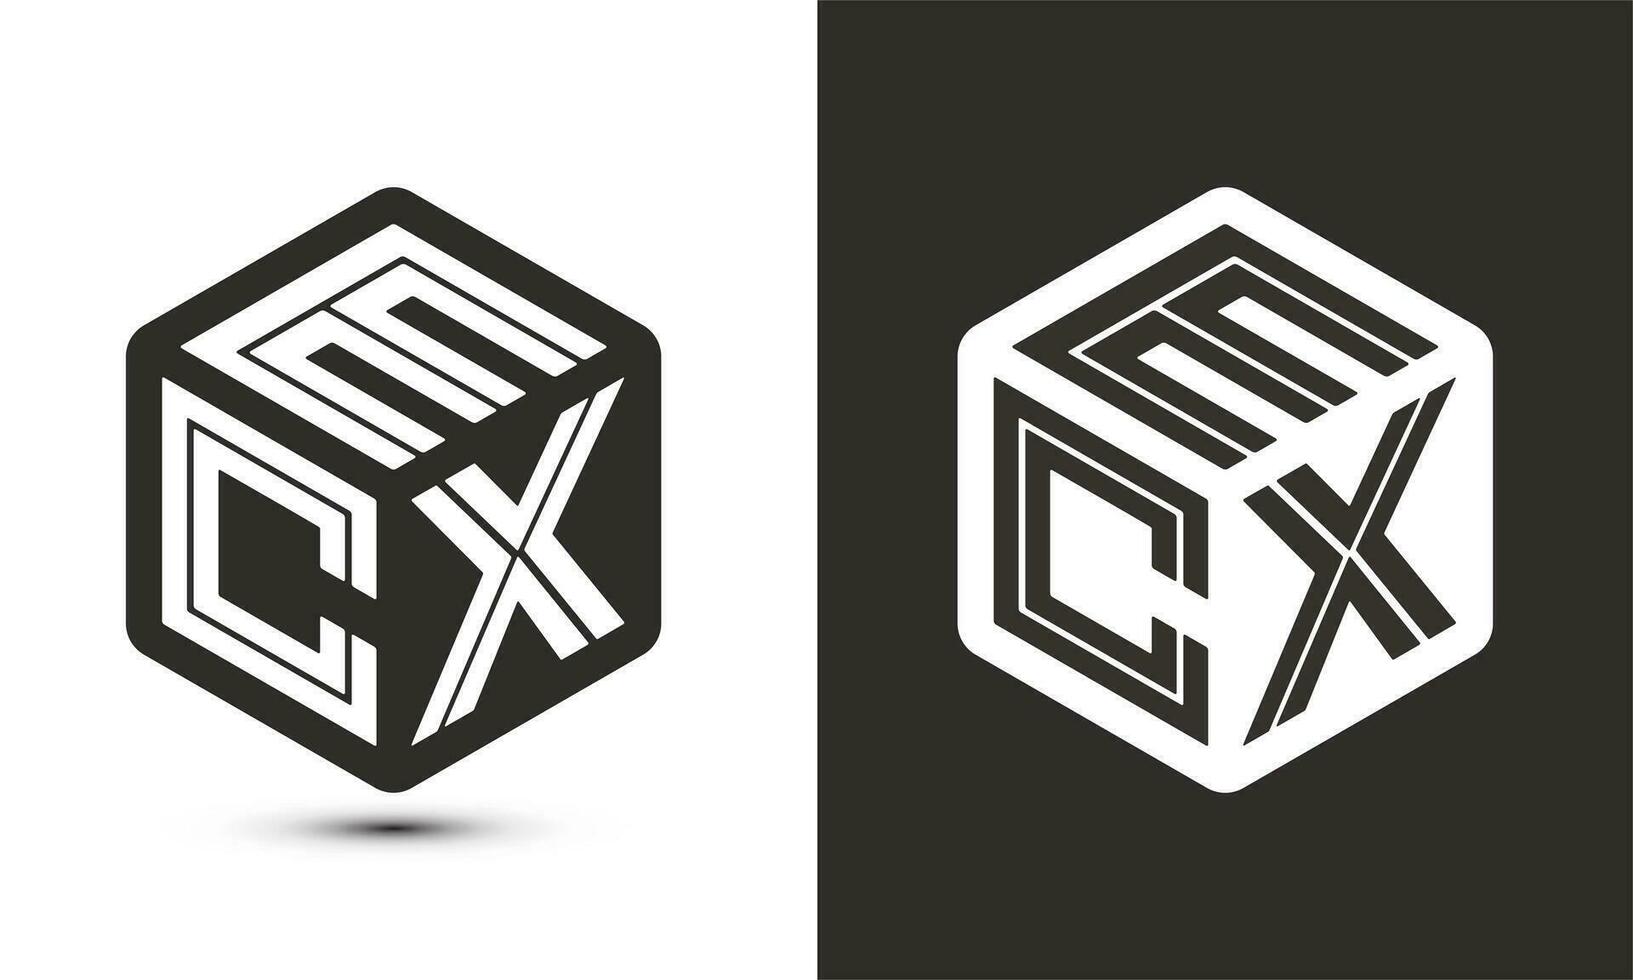 qmc brief logo ontwerp met illustrator kubus logo, vector logo modern alfabet doopvont overlappen stijl.